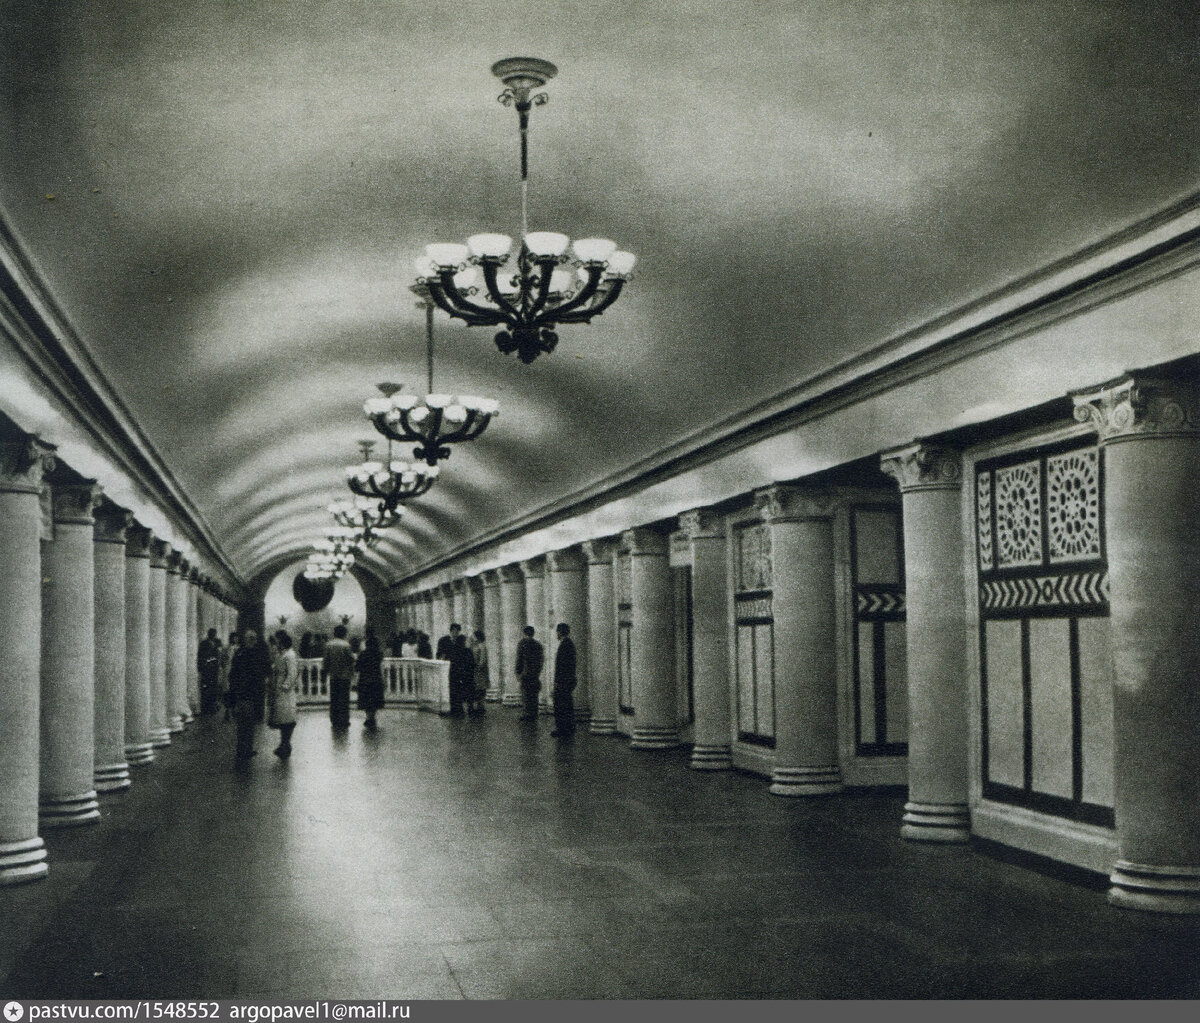 Метро Павелецкая. Центральный зал новой галереи 1888.